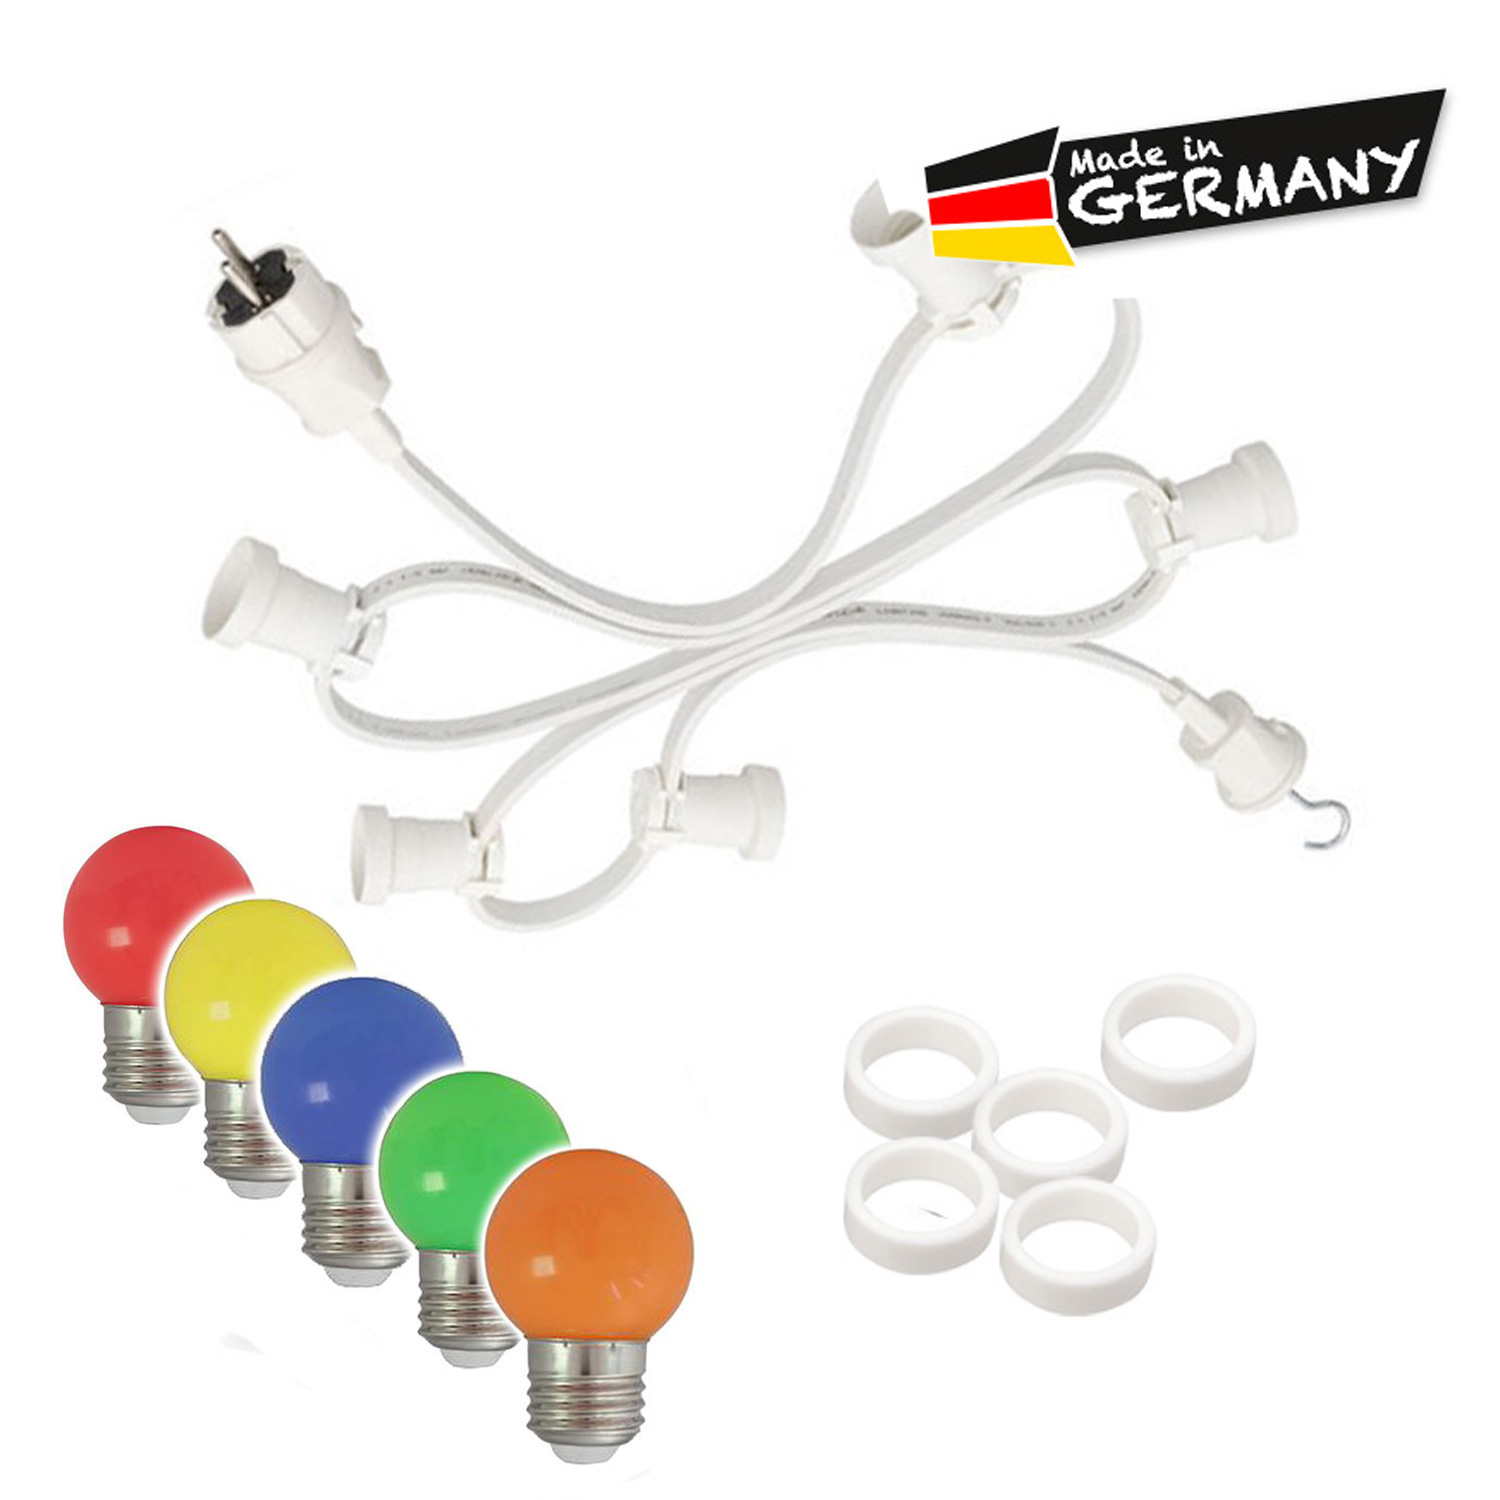 Illu-/Partylichterkette 20m - Außenlichterkette weiß - Made in Germany - 30 x bunte LED Kugellampen